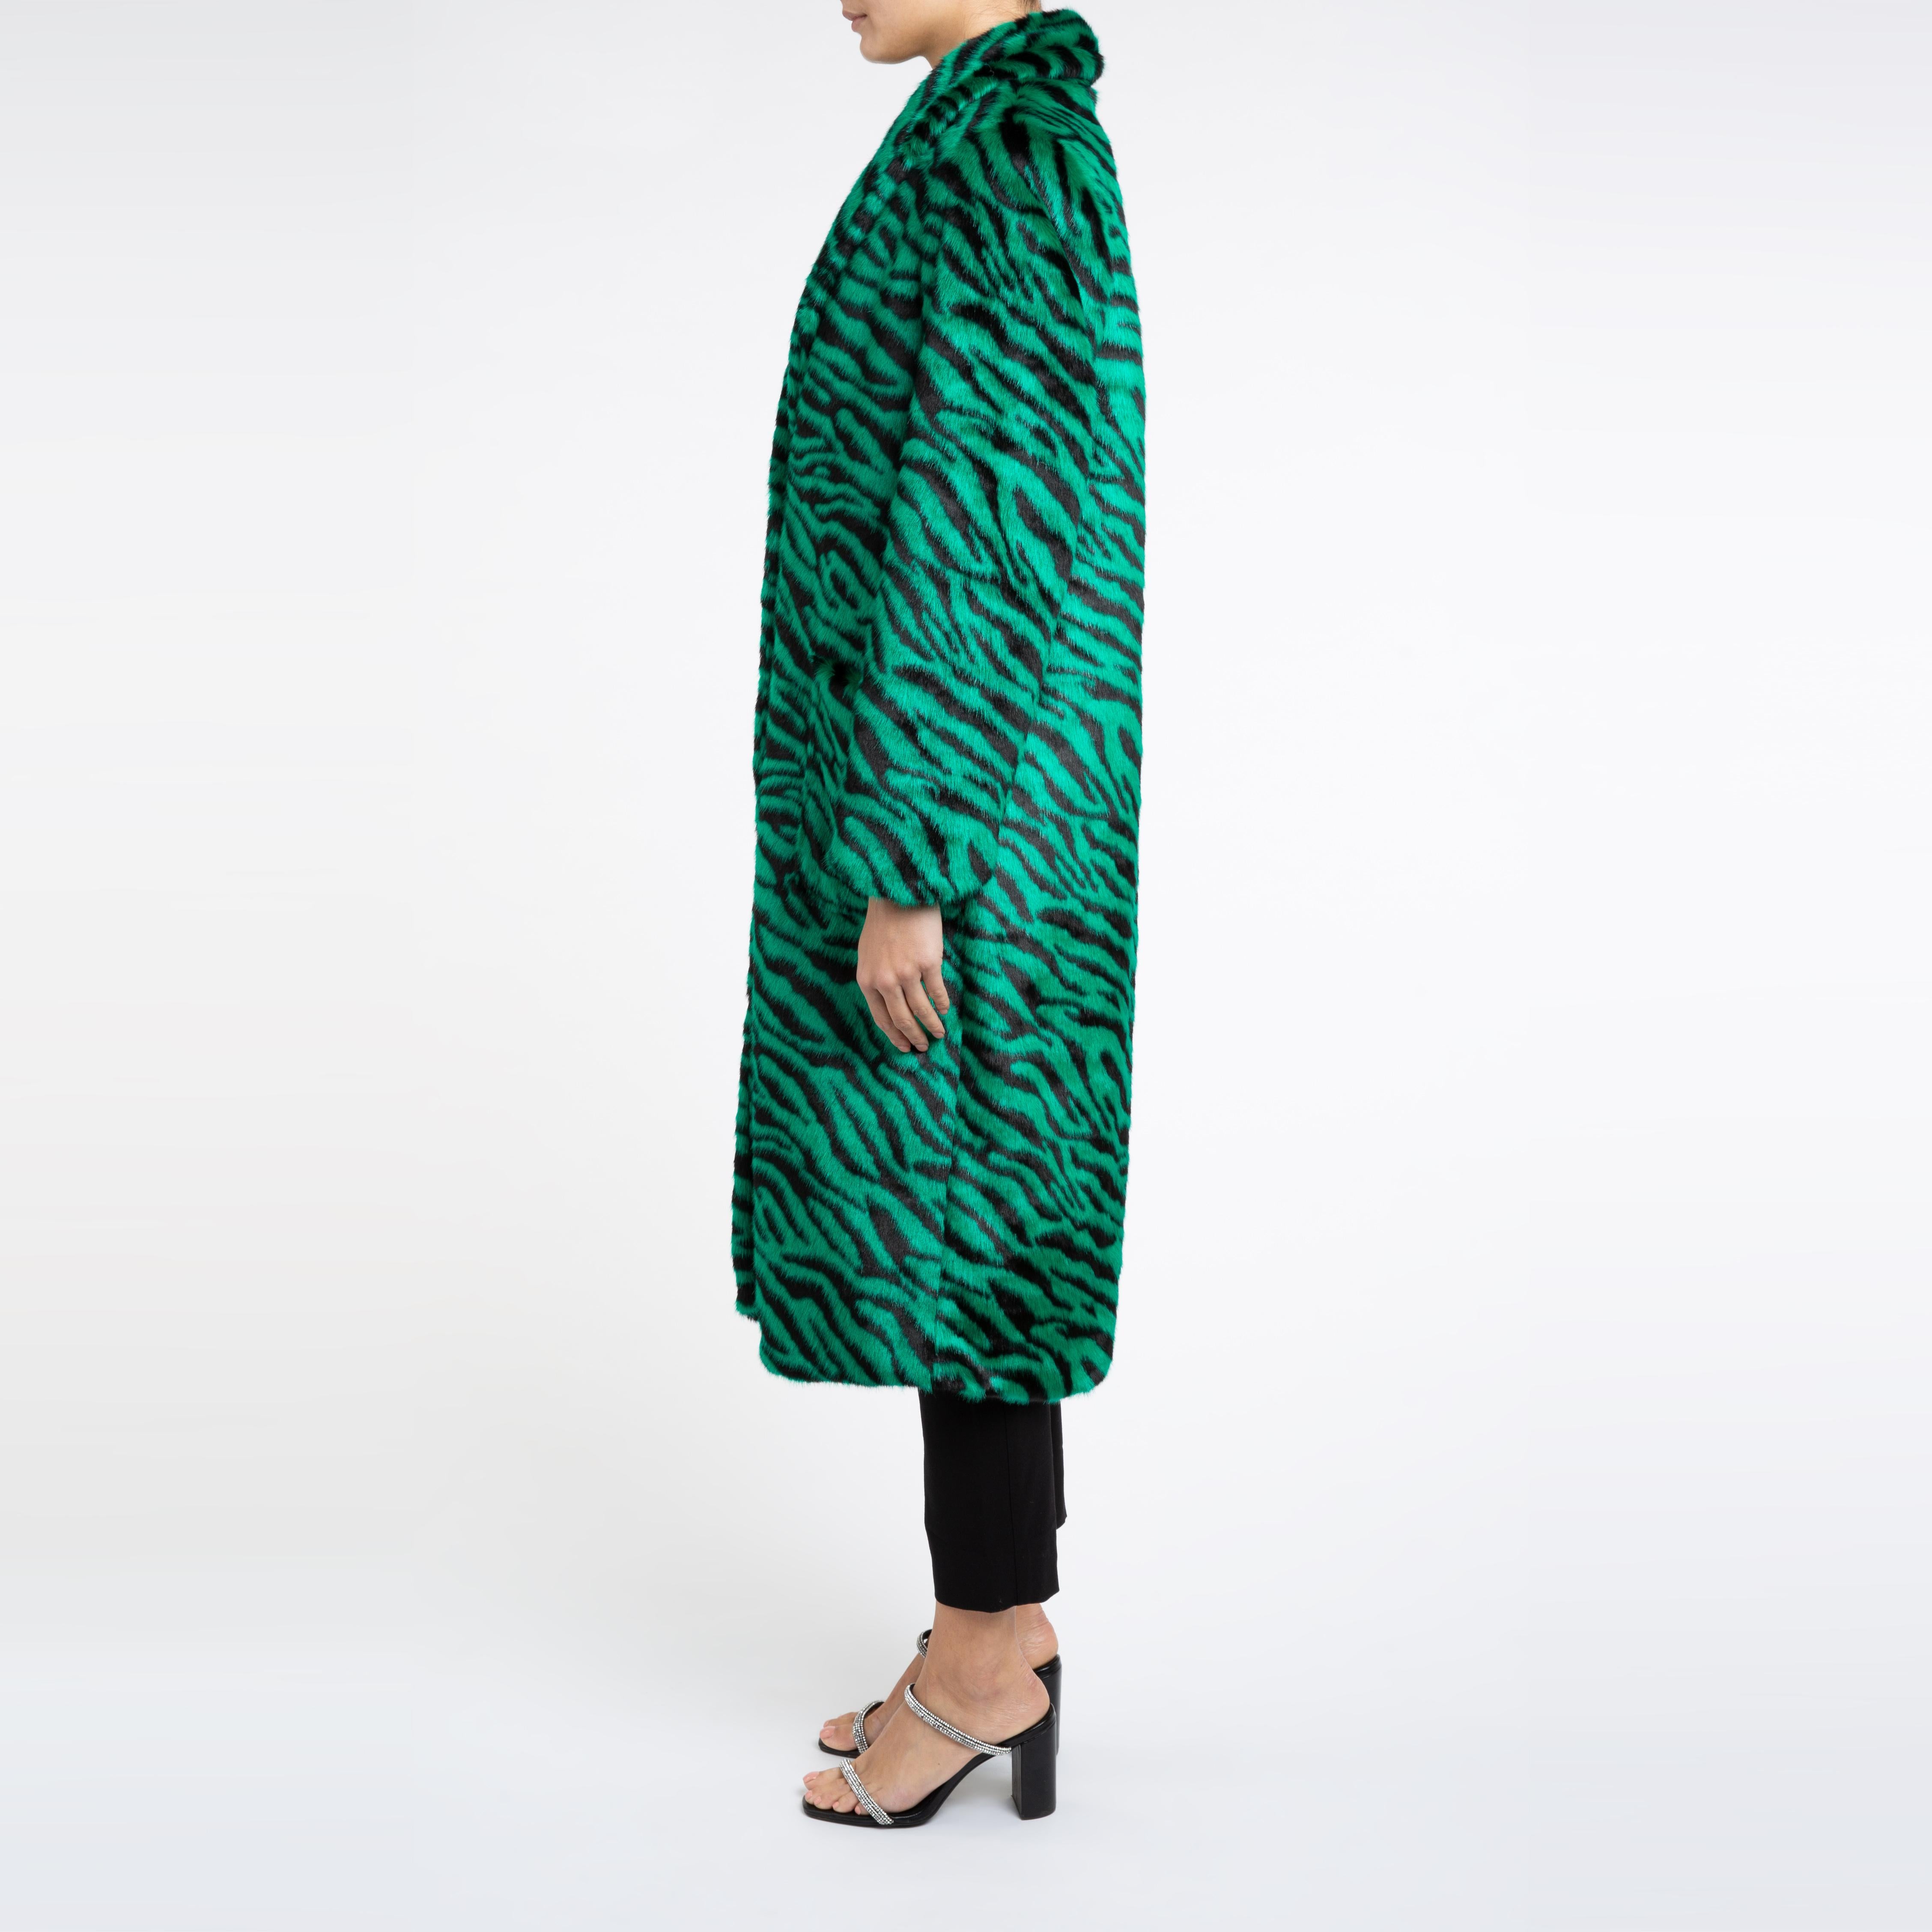 Esmeralda Kunstfell Mantel in Smaragdgrün Zebra Print Größe uk 10

Ein Mantel, den man sowohl zu Jeans als auch zu einem Kleid tragen kann und der Sie in der kalten Jahreszeit warm hält. 
Dieses Longline-Design ist schmeichelhaft und lässt sich mit